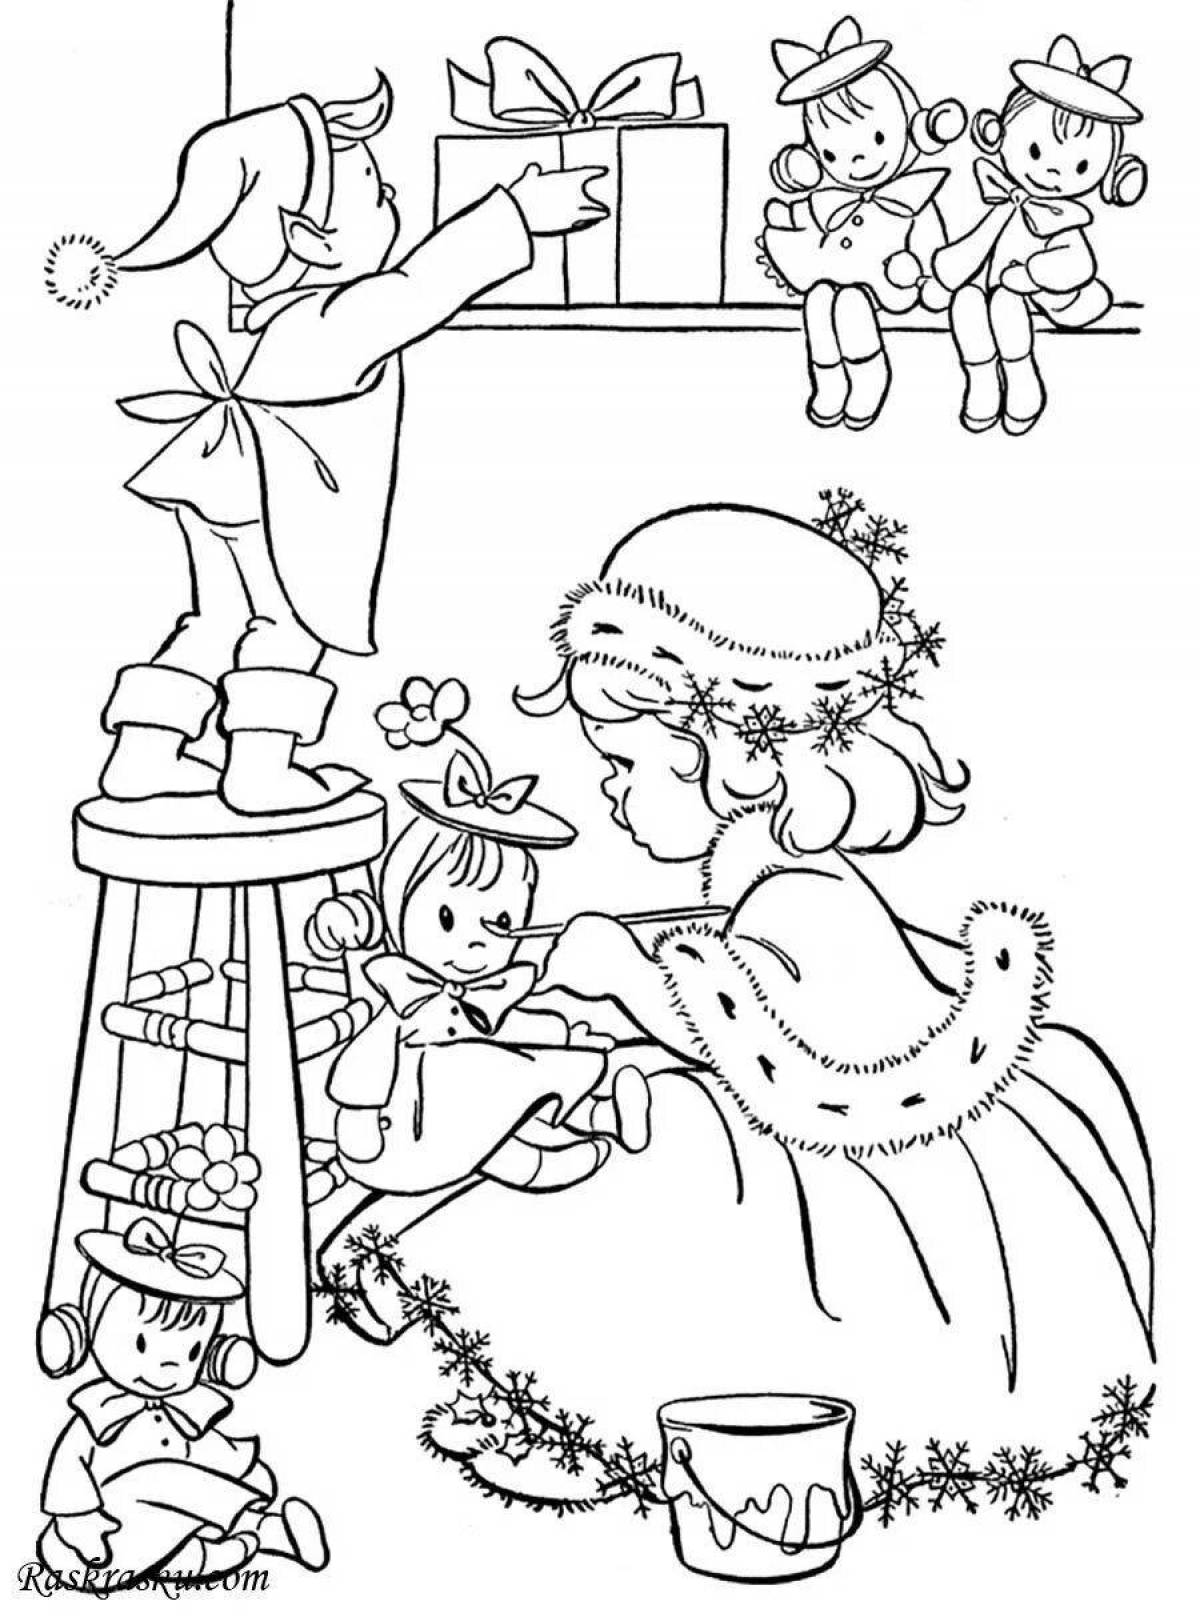 Children's Christmas glamor coloring